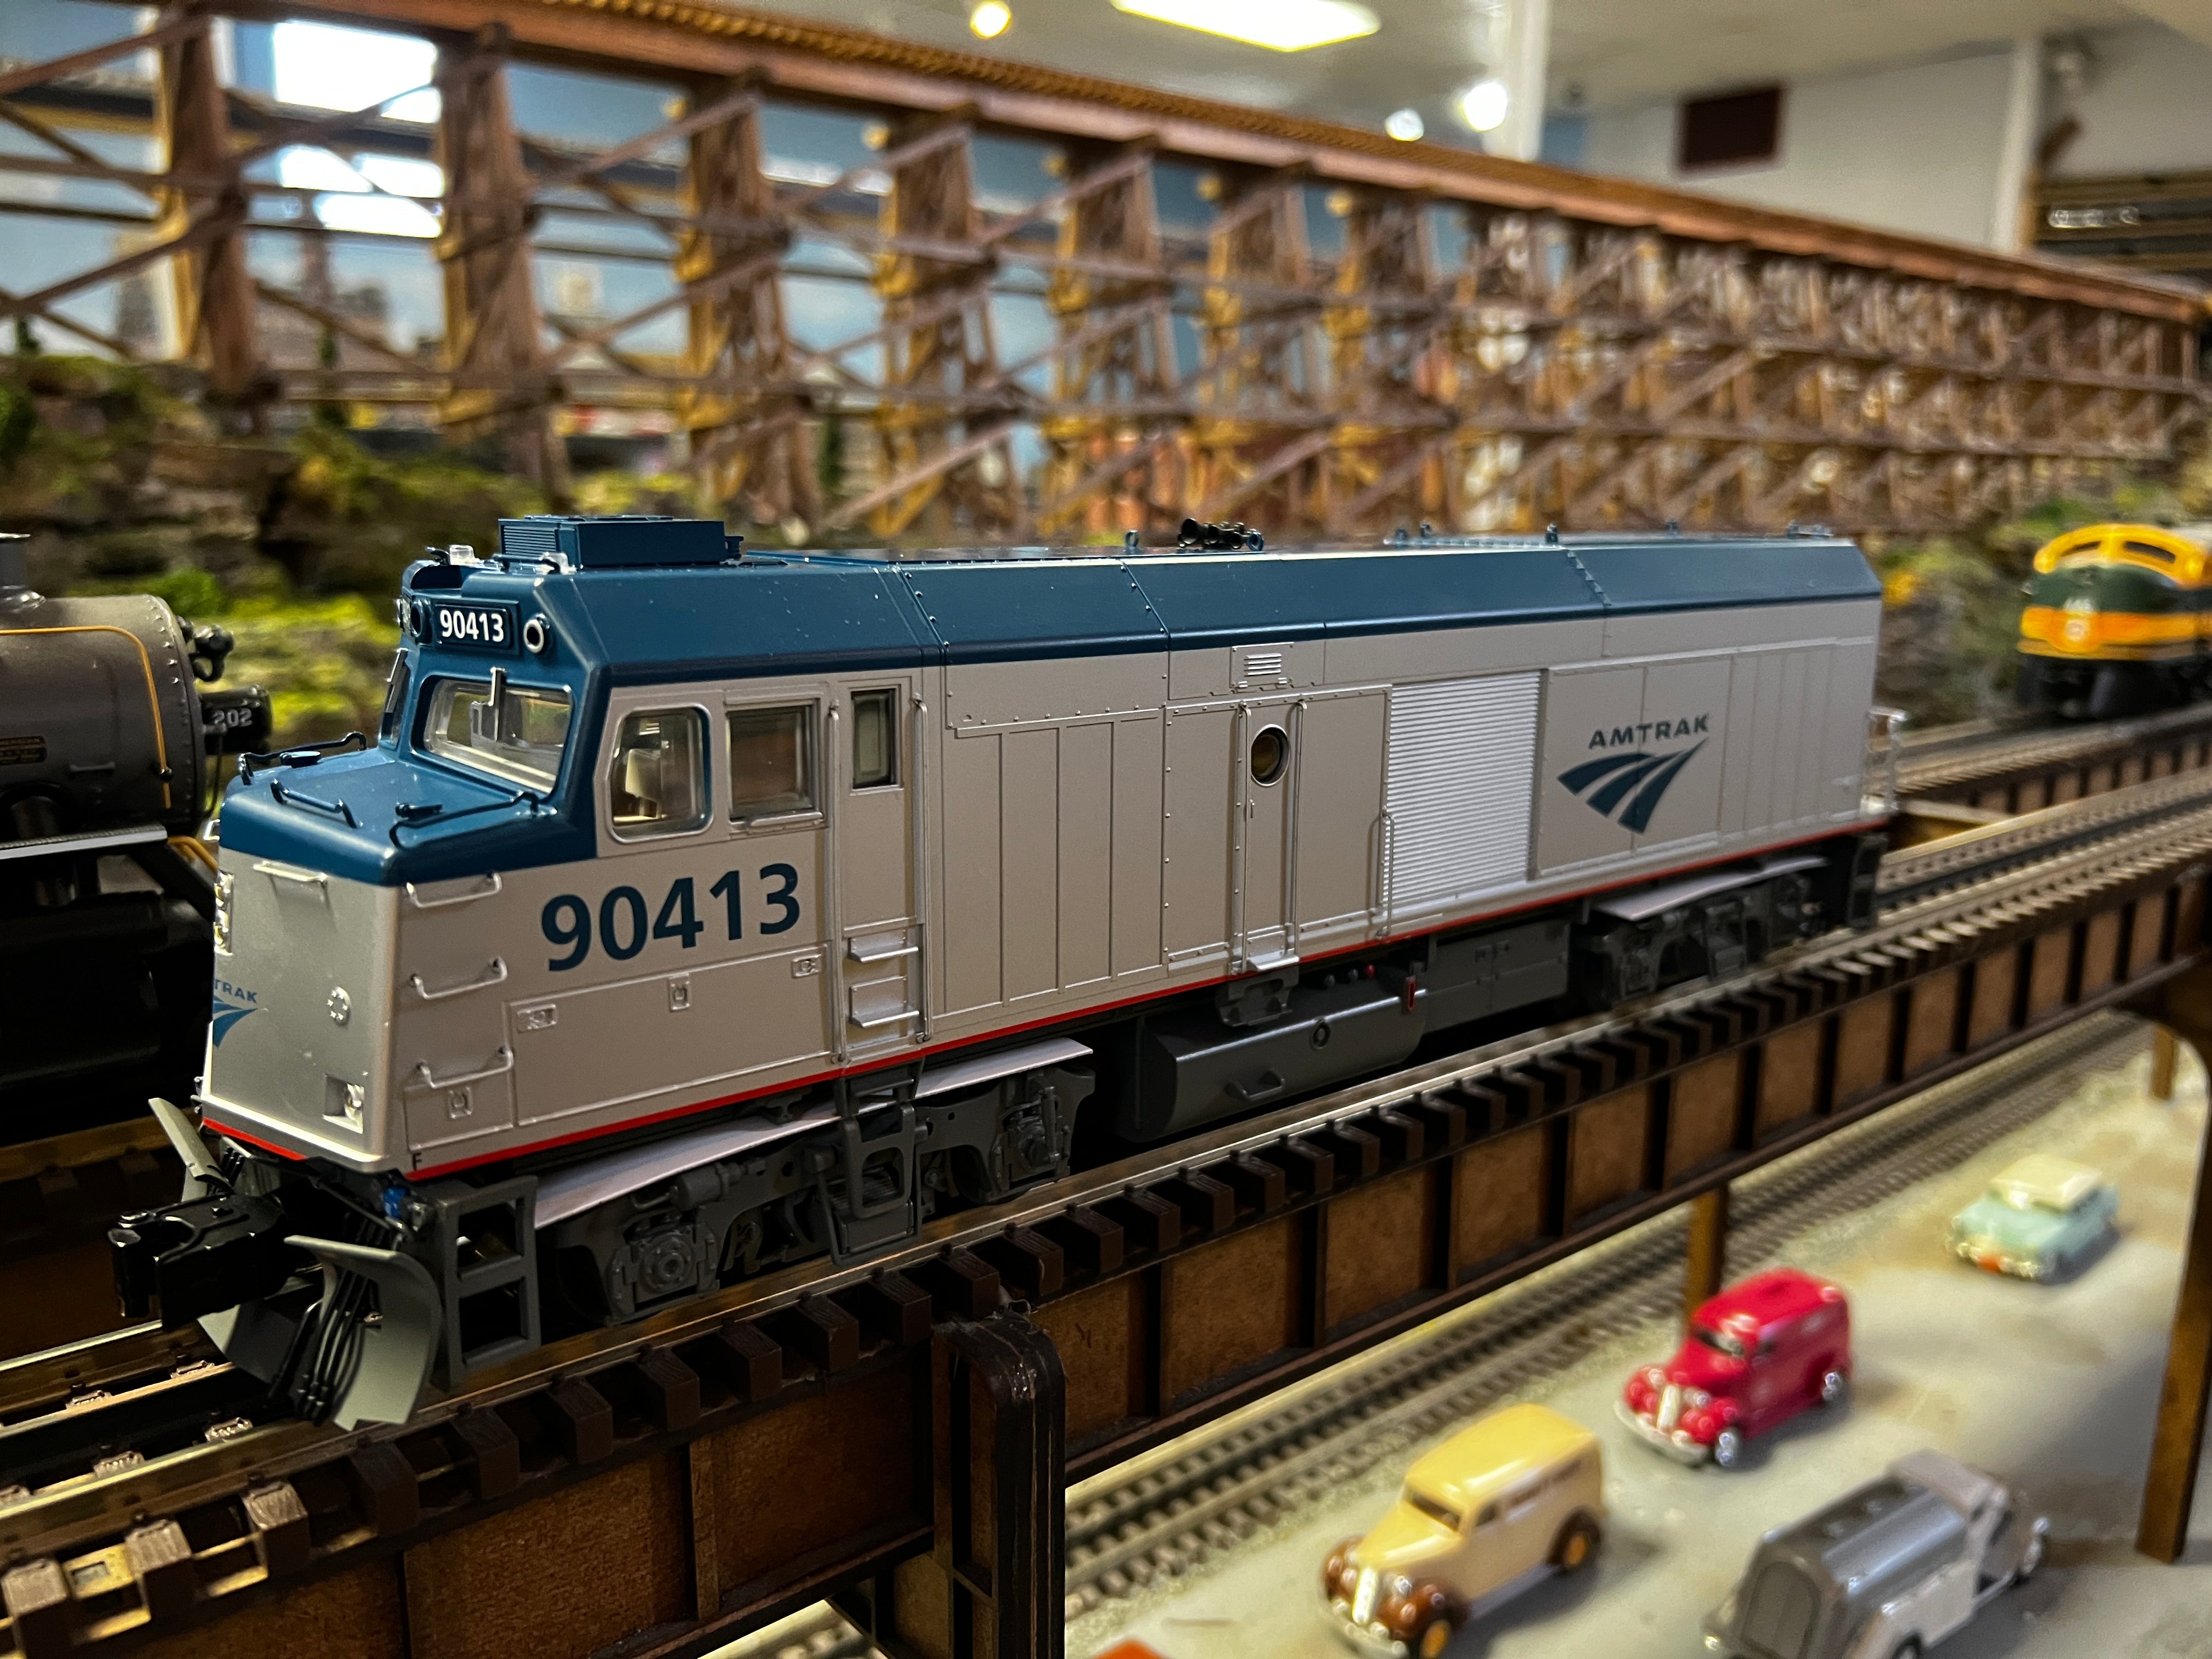 Lionel 2233790 - Legacy Cabbage Diesel Locomotive "Amtrak" #90413 (Phase V)